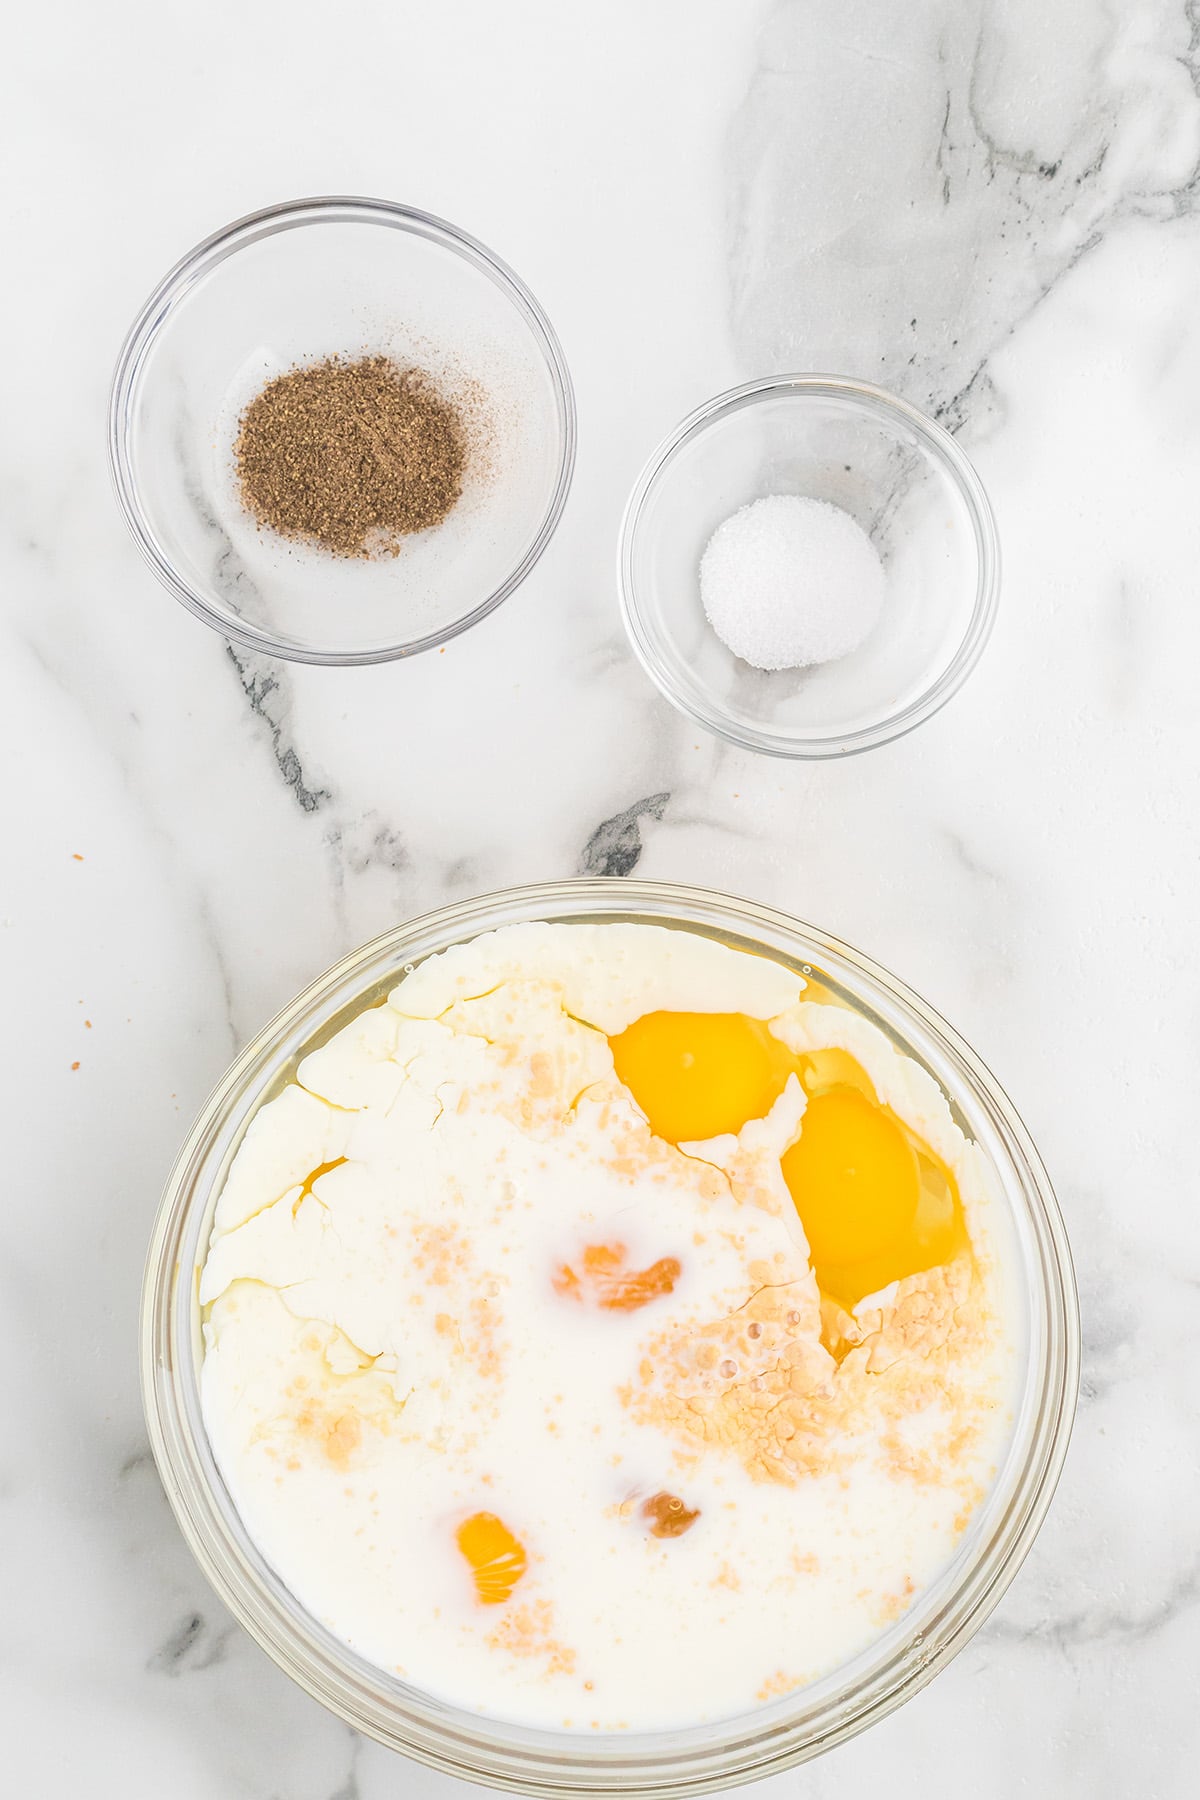 Eggs, milk, and seasonings in a bowl.